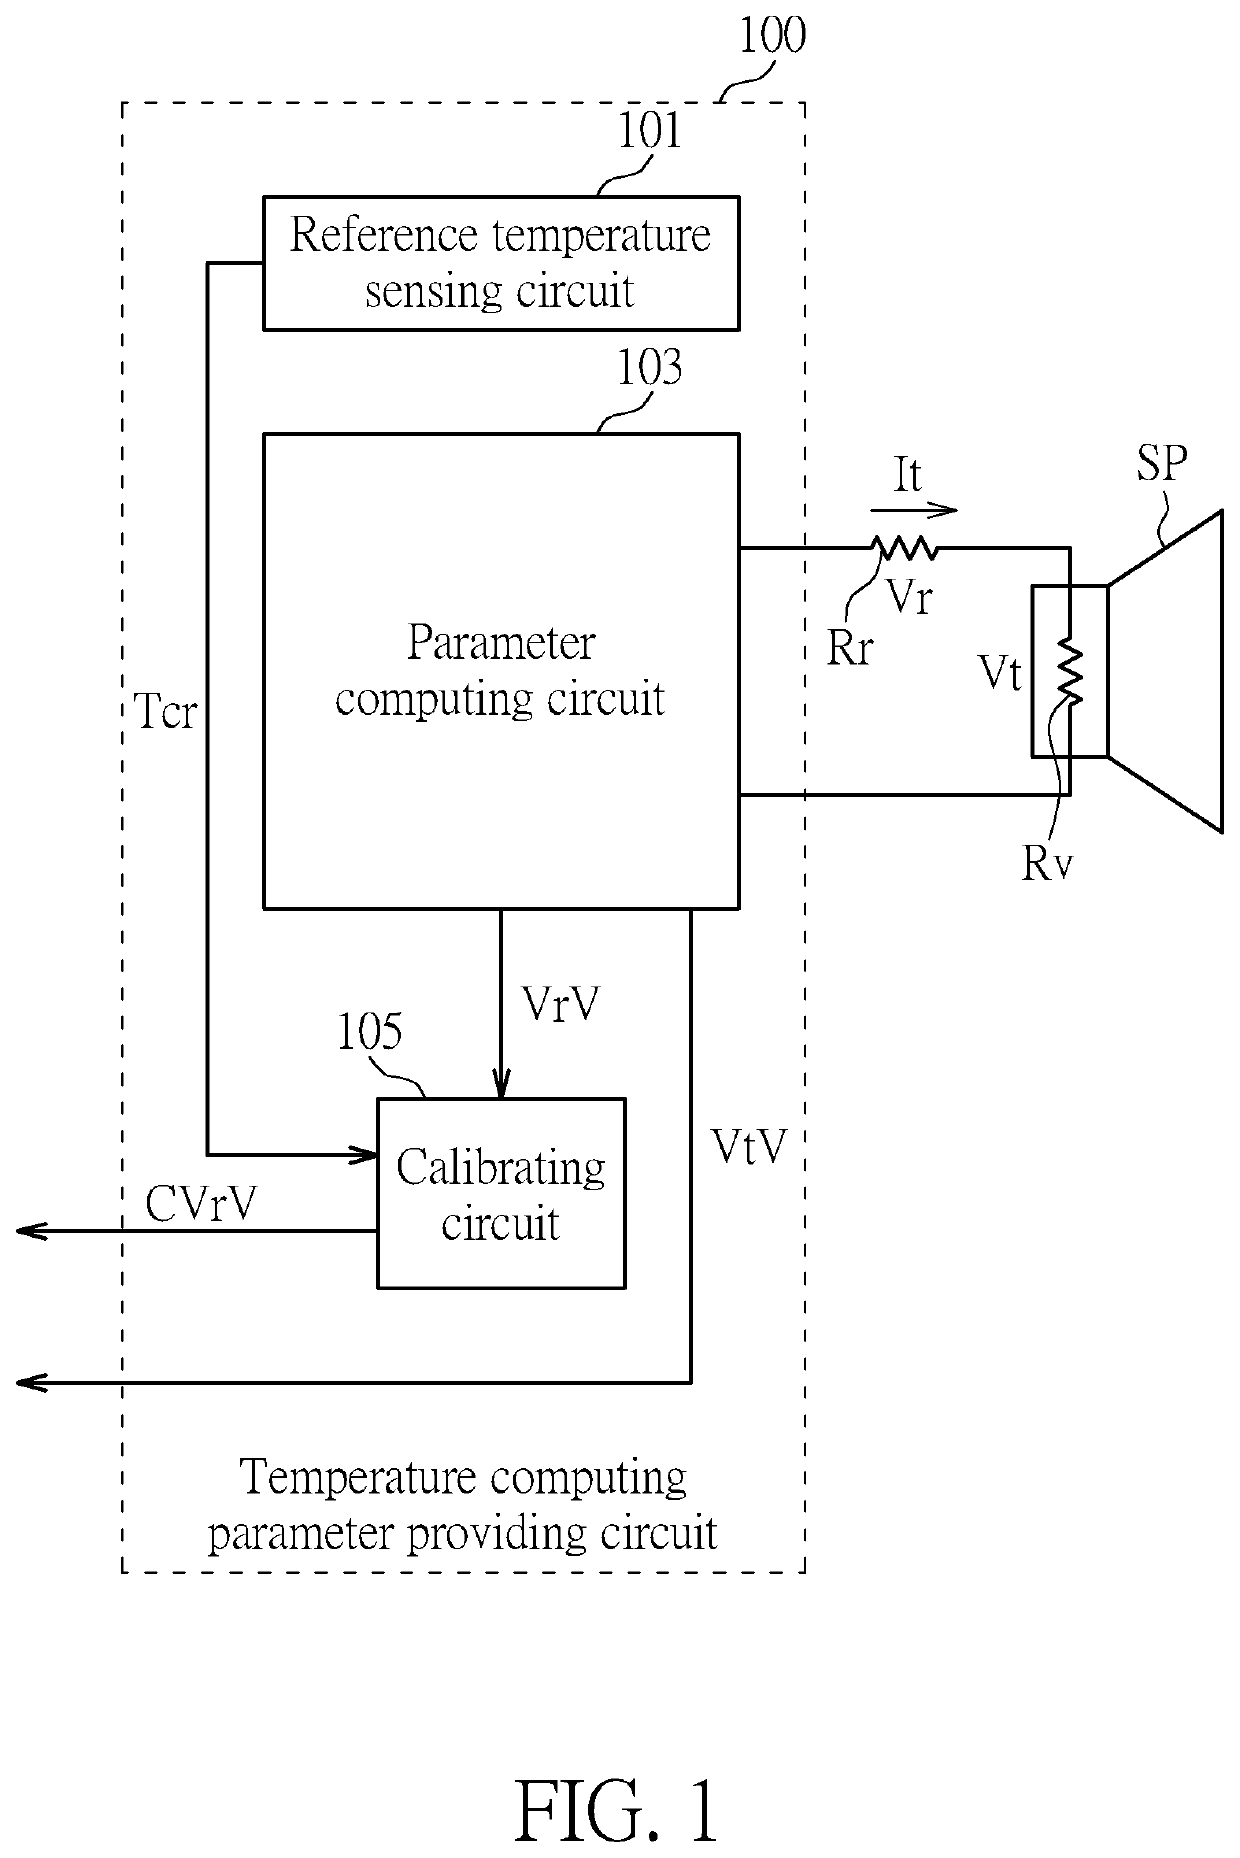 Temperature computing parameter providing circuit, temperature computing parameter providing method and temperature monitoring method